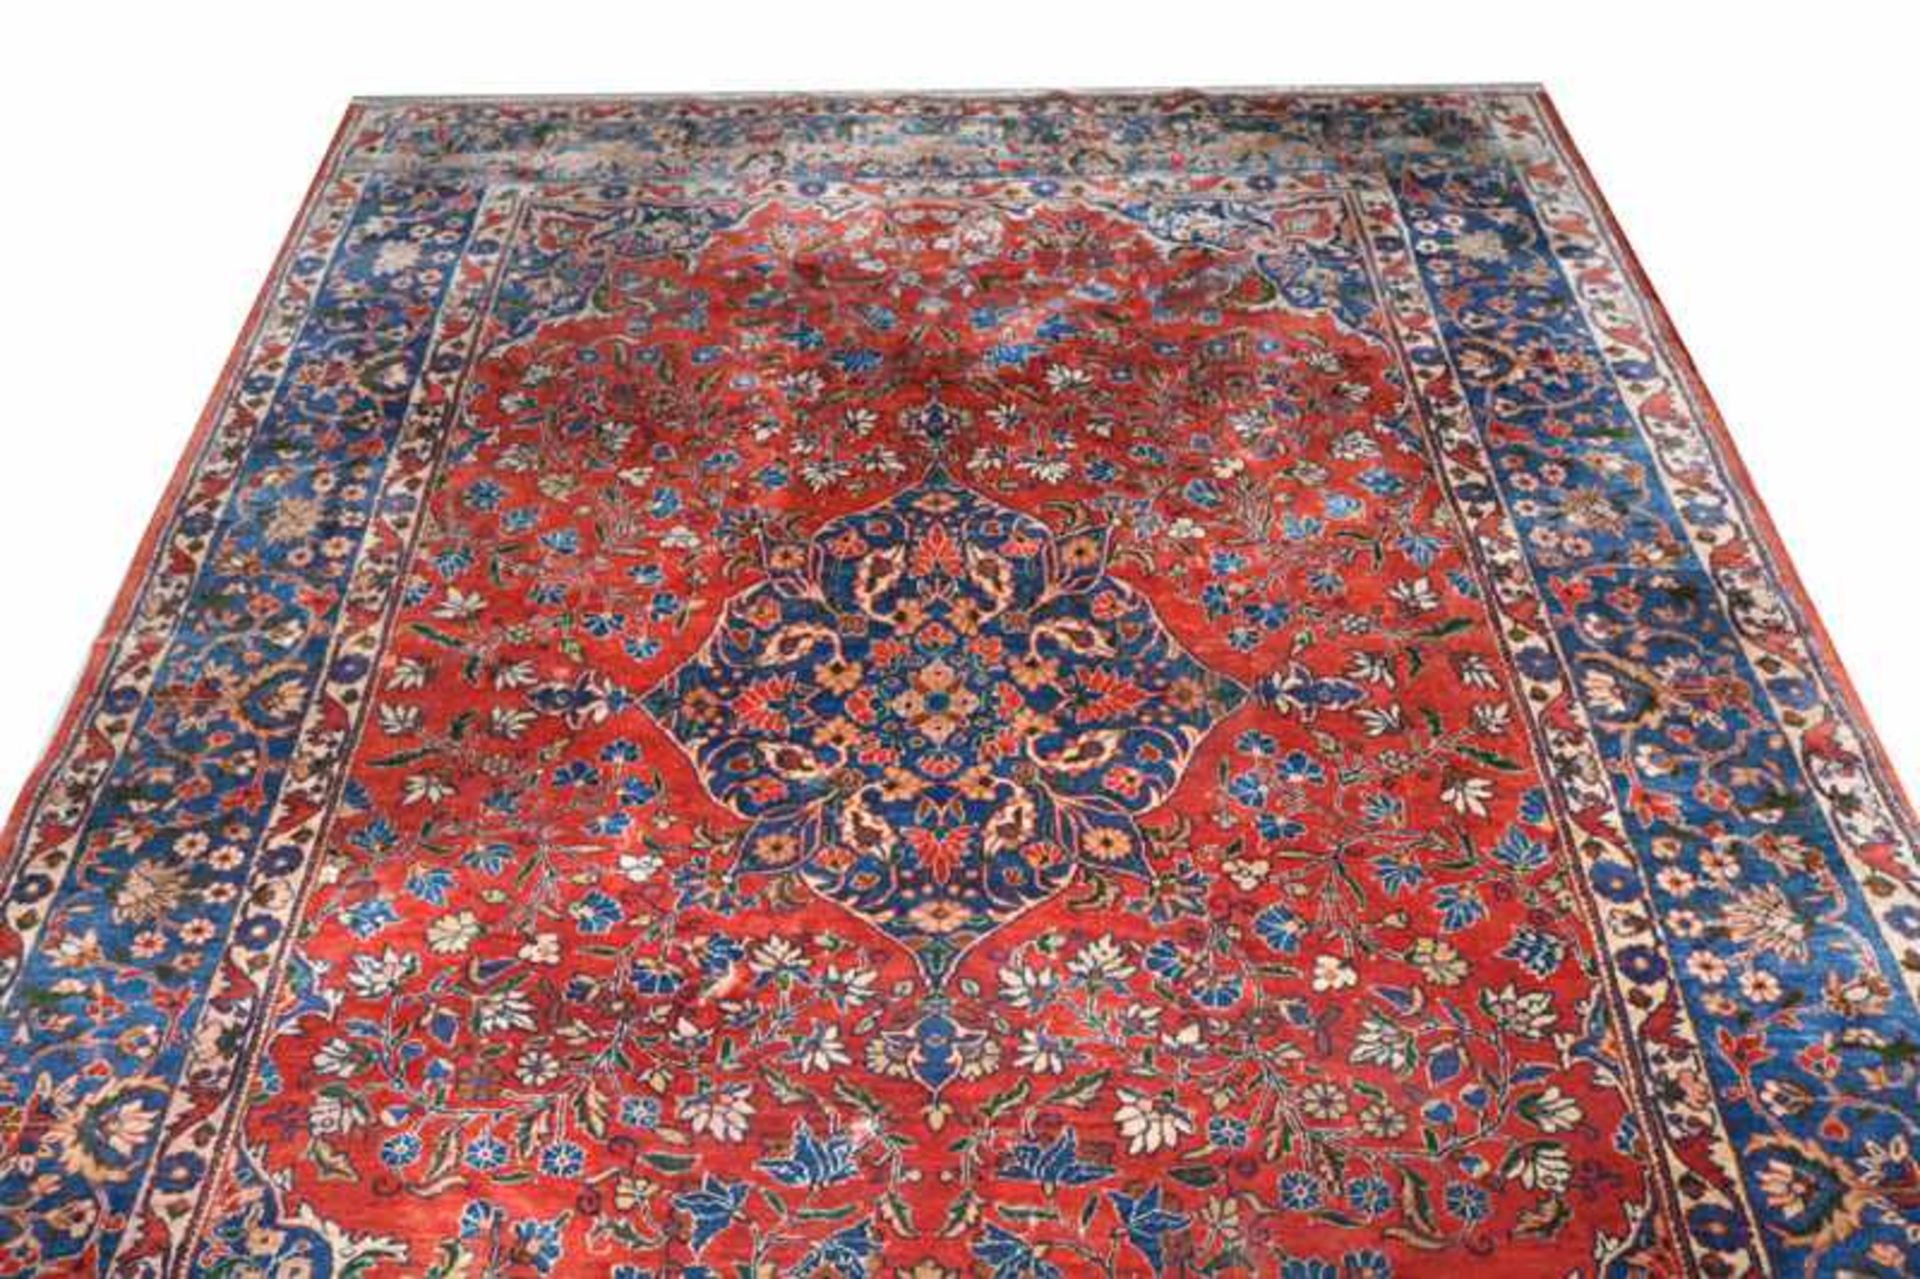 Teppich, Keshan, rot/blau/bunt, signiert, Gebrauchsspuren, teils fleckig, 258 cm x 204 cm